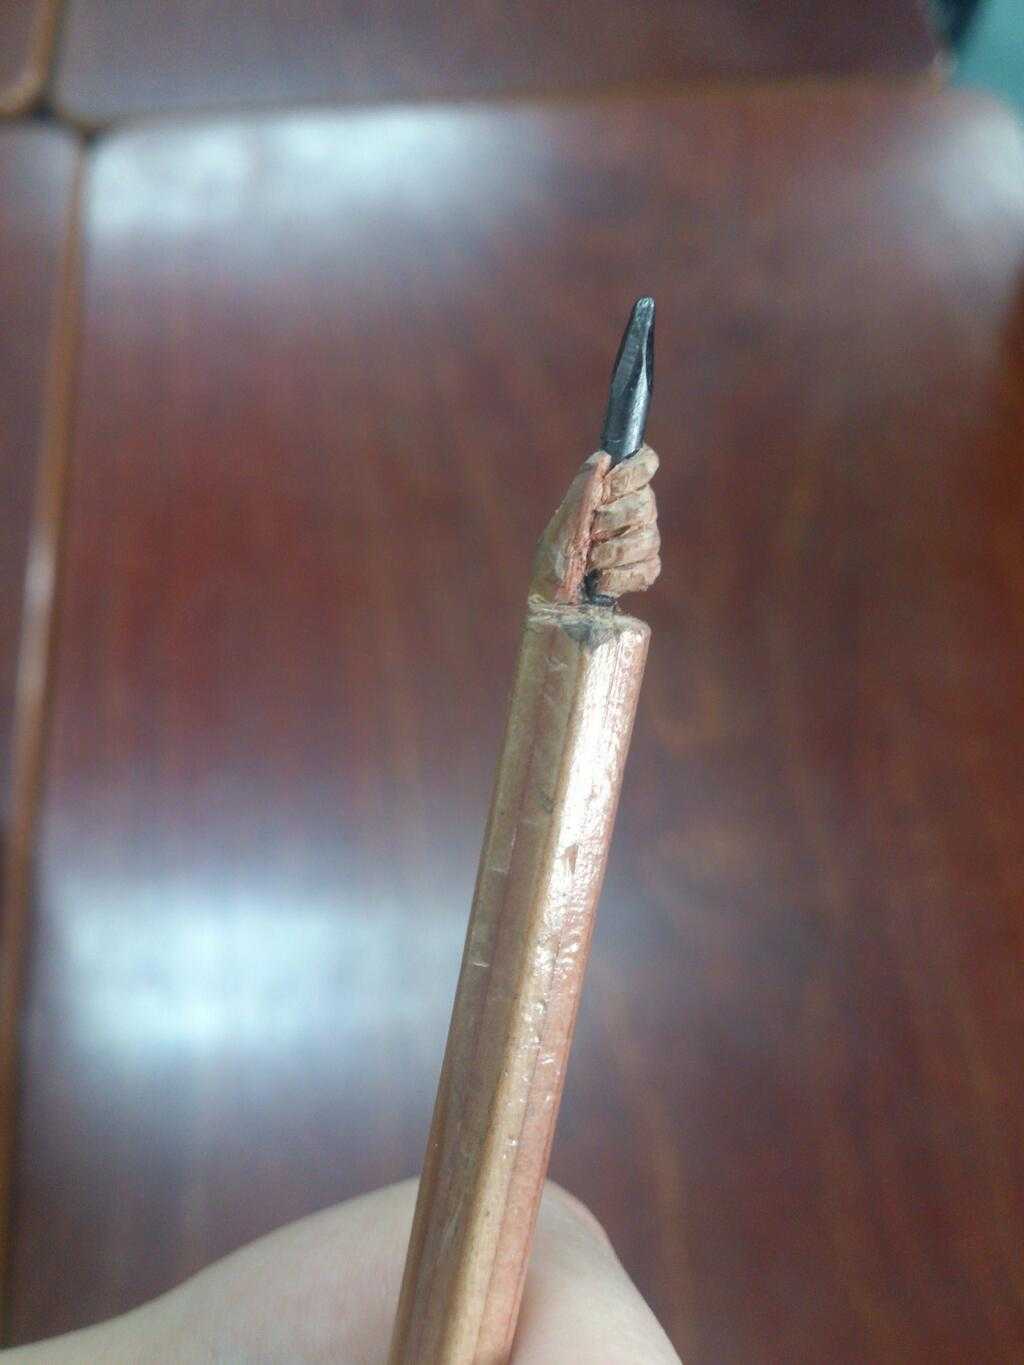 「芯を握る手」友達の削った鉛筆が凄いとTwitterで話題